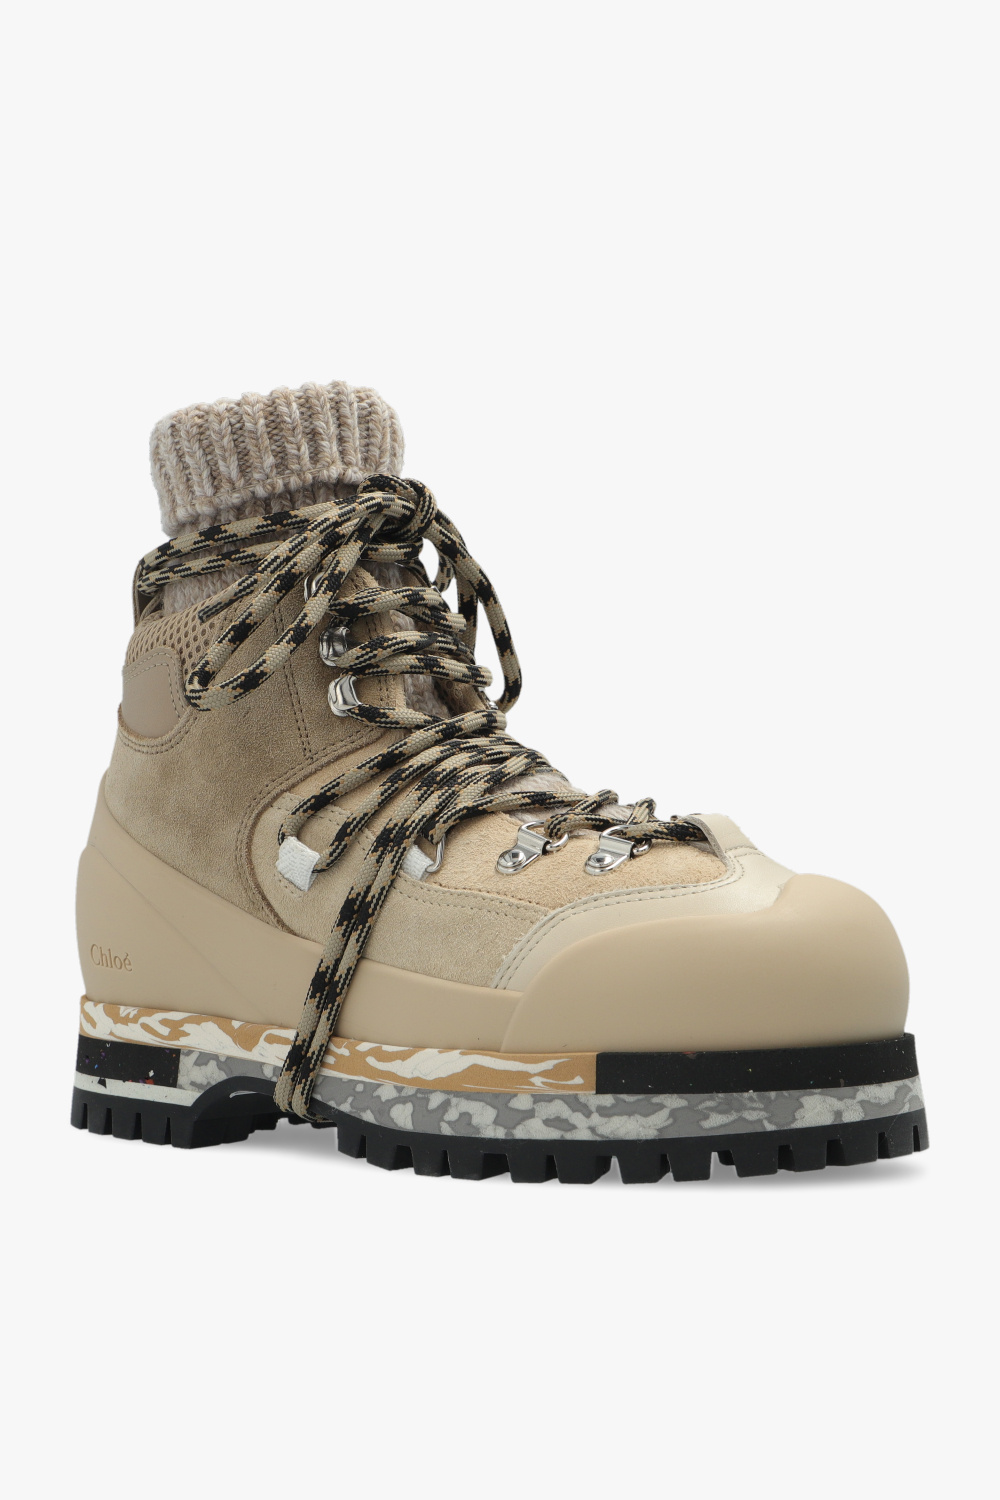 Chloé ‘Nikie’ hiking boots